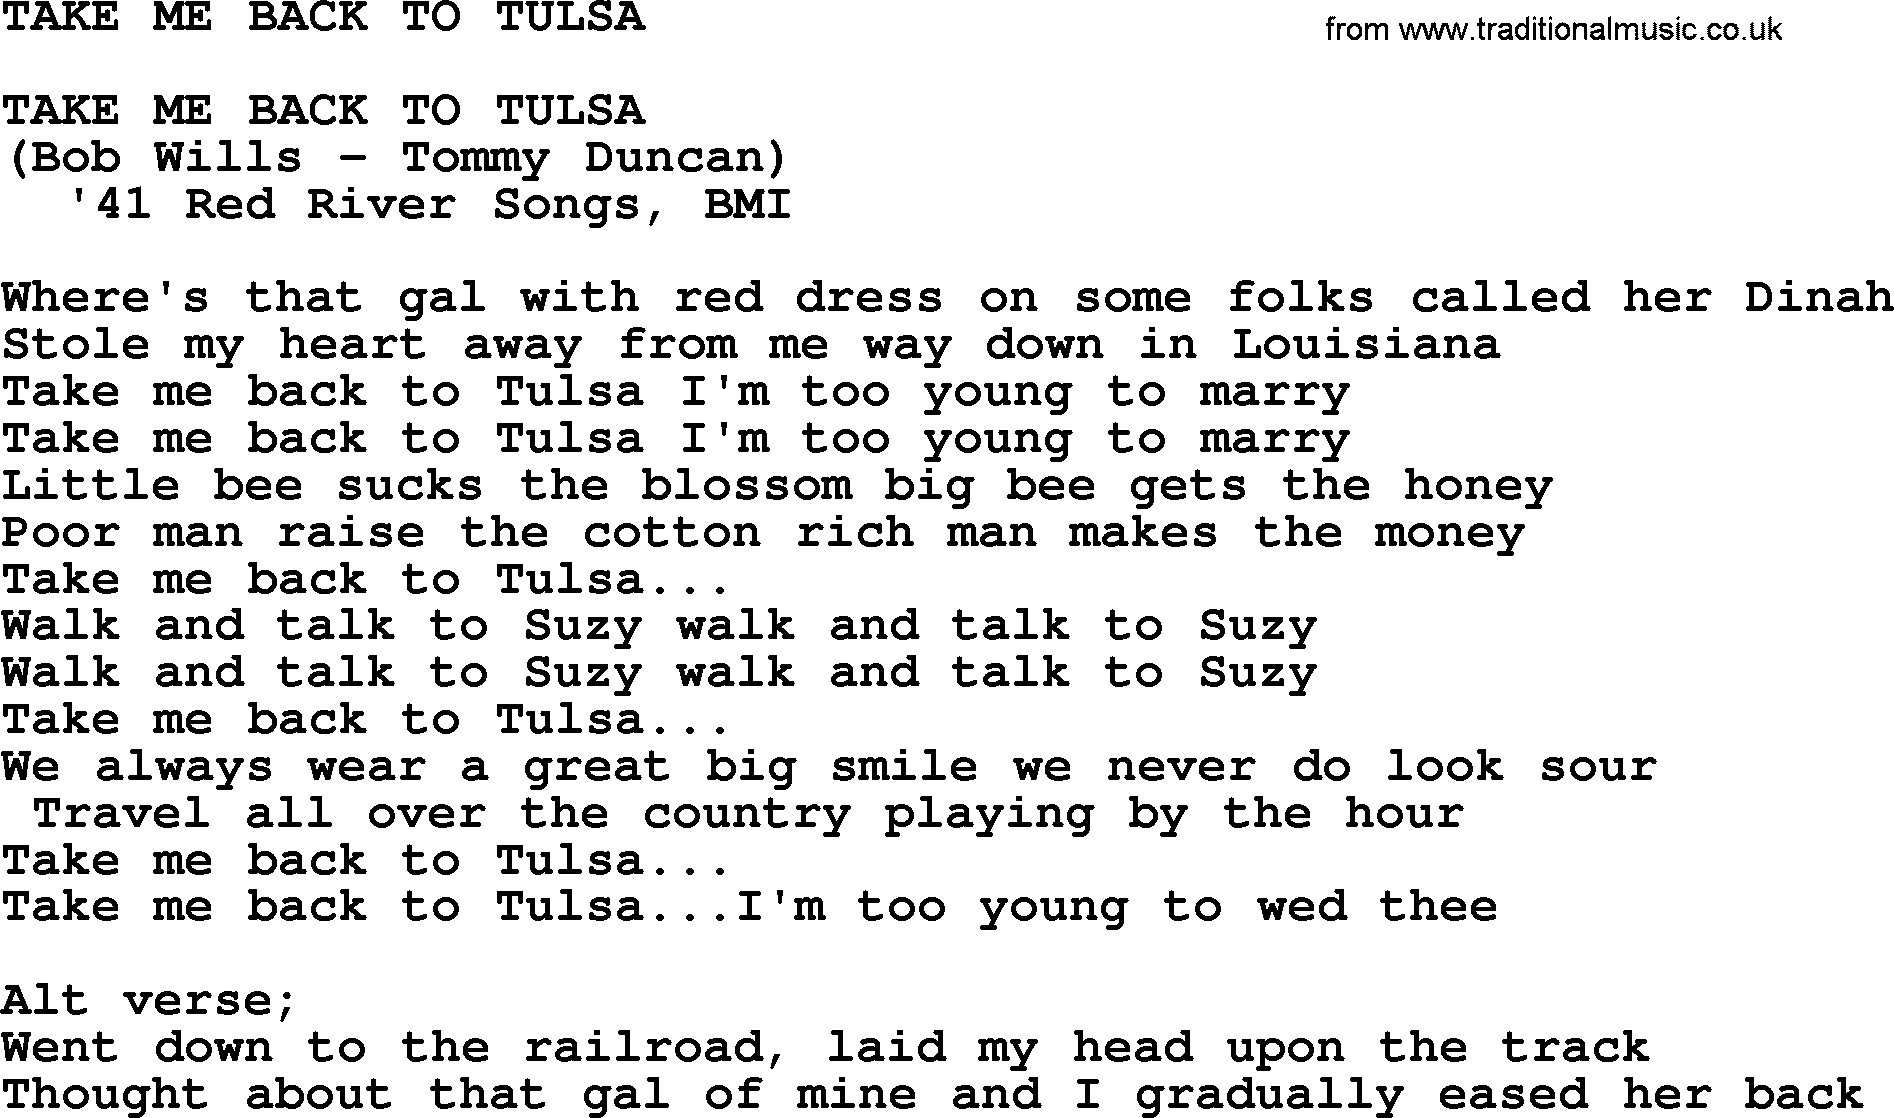 Merle Haggard song: Take Me Back To Tulsa, lyrics.